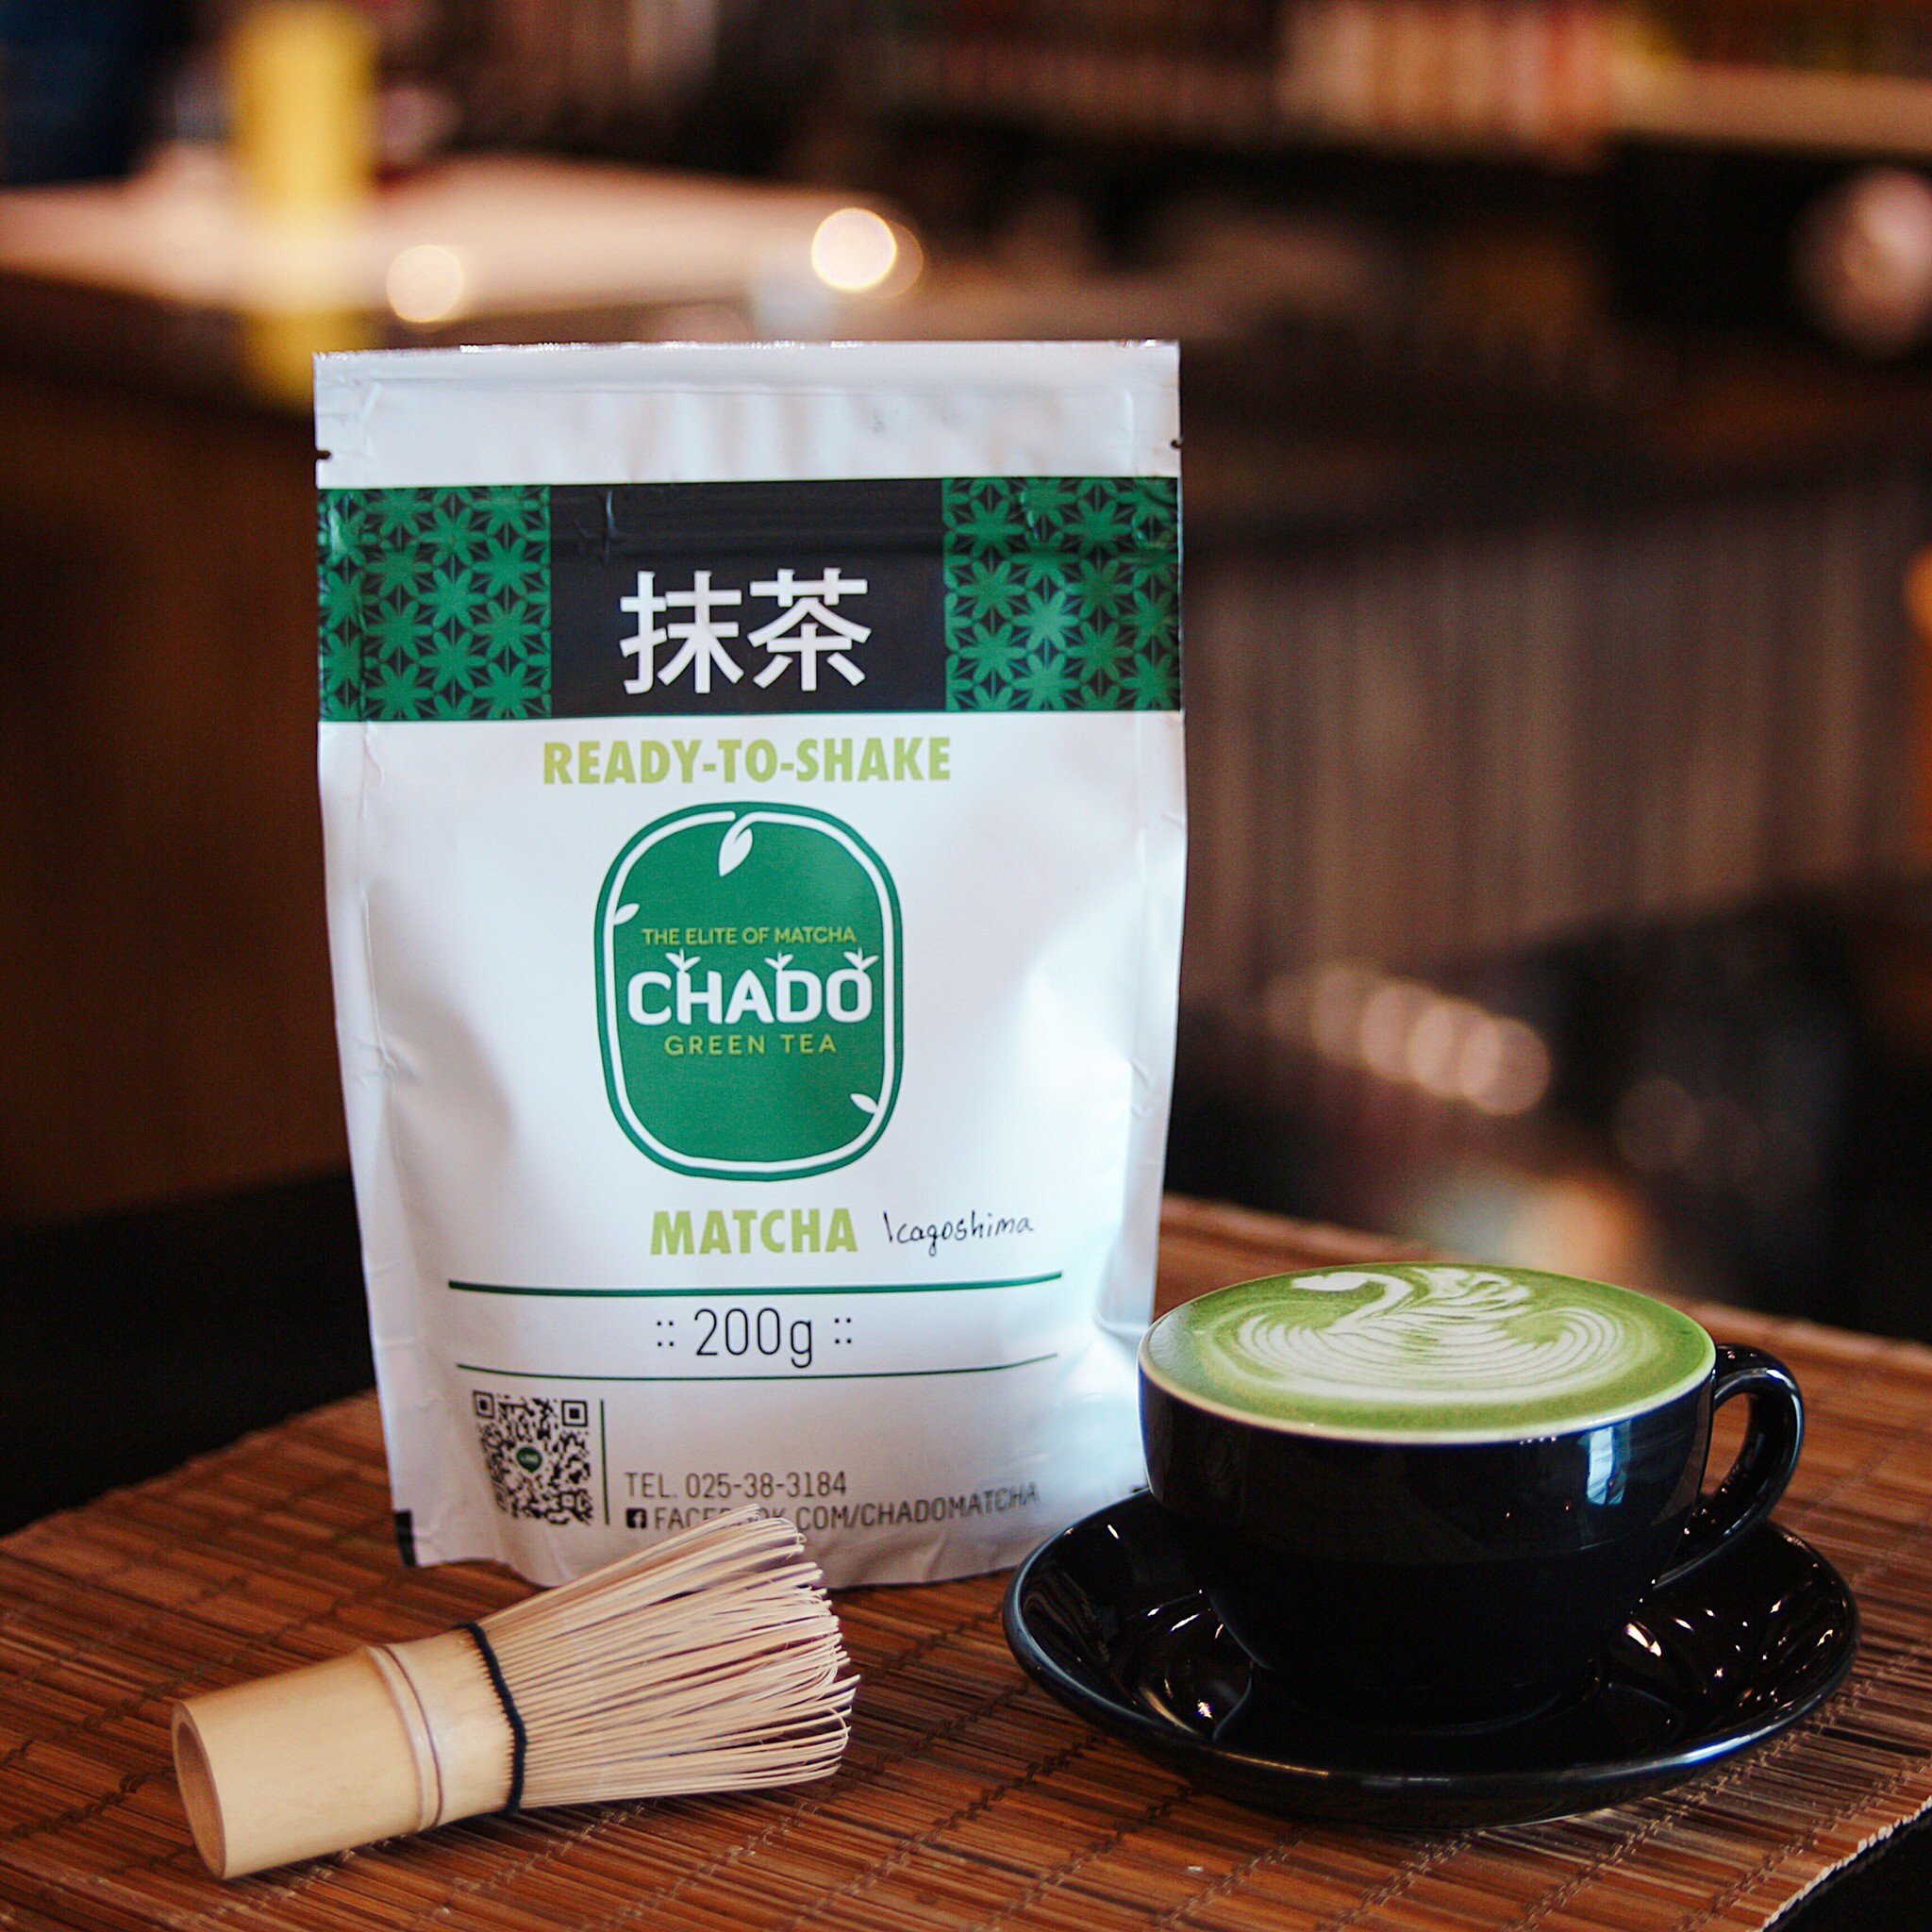 รูปภาพรายละเอียดของ CHADO Kagoshima Matcha คาโกชิม่า มัทฉะ ผงชาเขียว พร้อมชง ตรา ชาโดะ ขนาด 200 กรัม